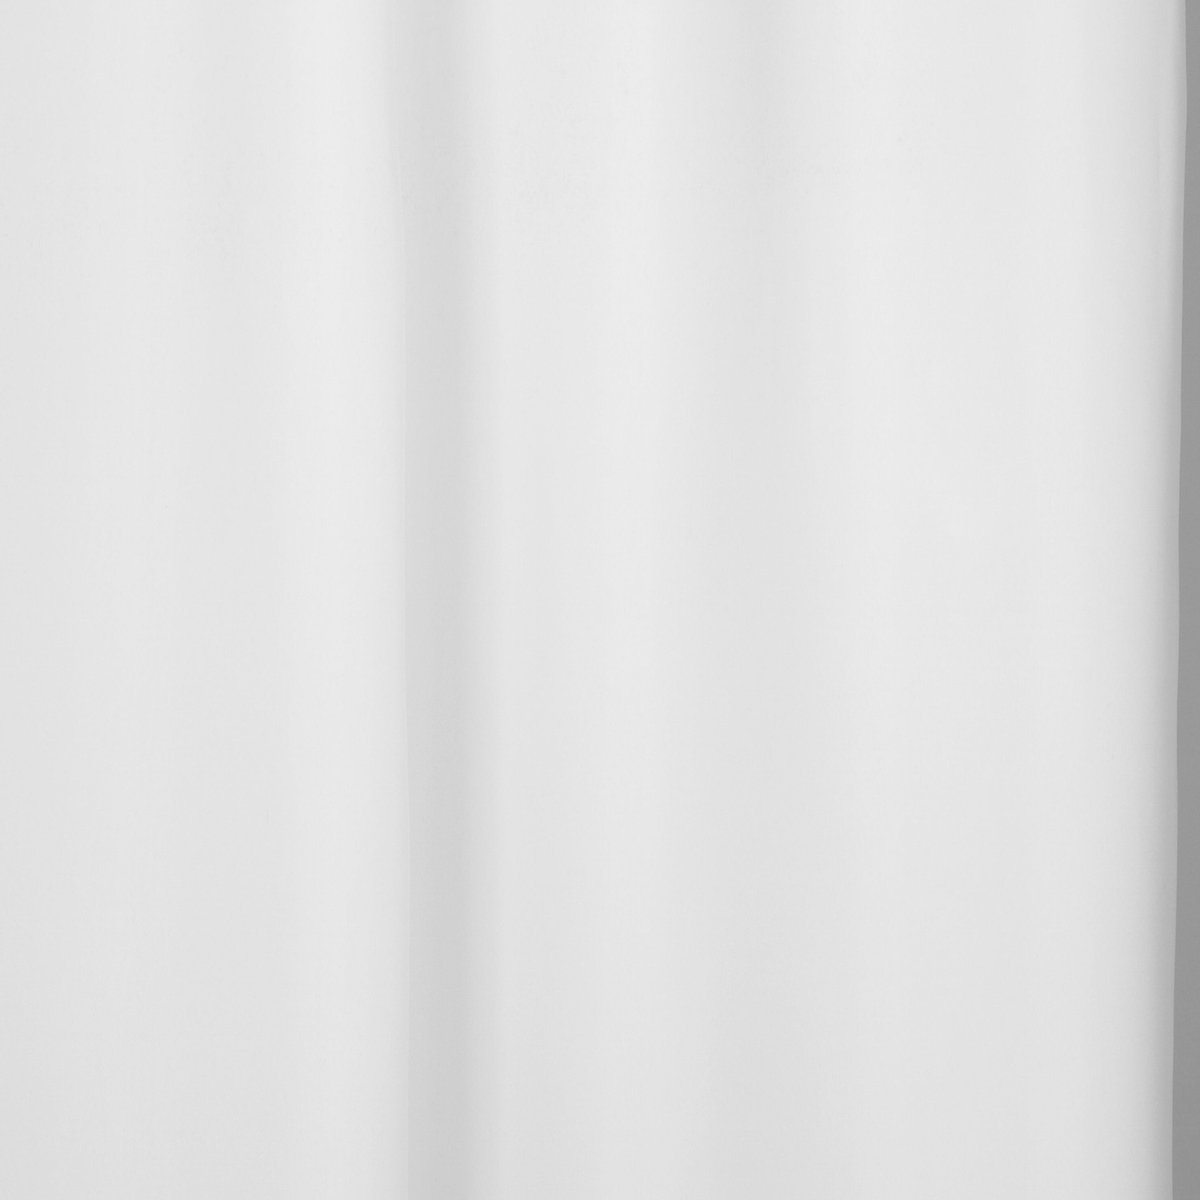 Atmosphera Isolerende Ivoor gordijn met 140 x 260 cm - gordijn raambekleding - gordijnen kant en klaar met haakjes ringen